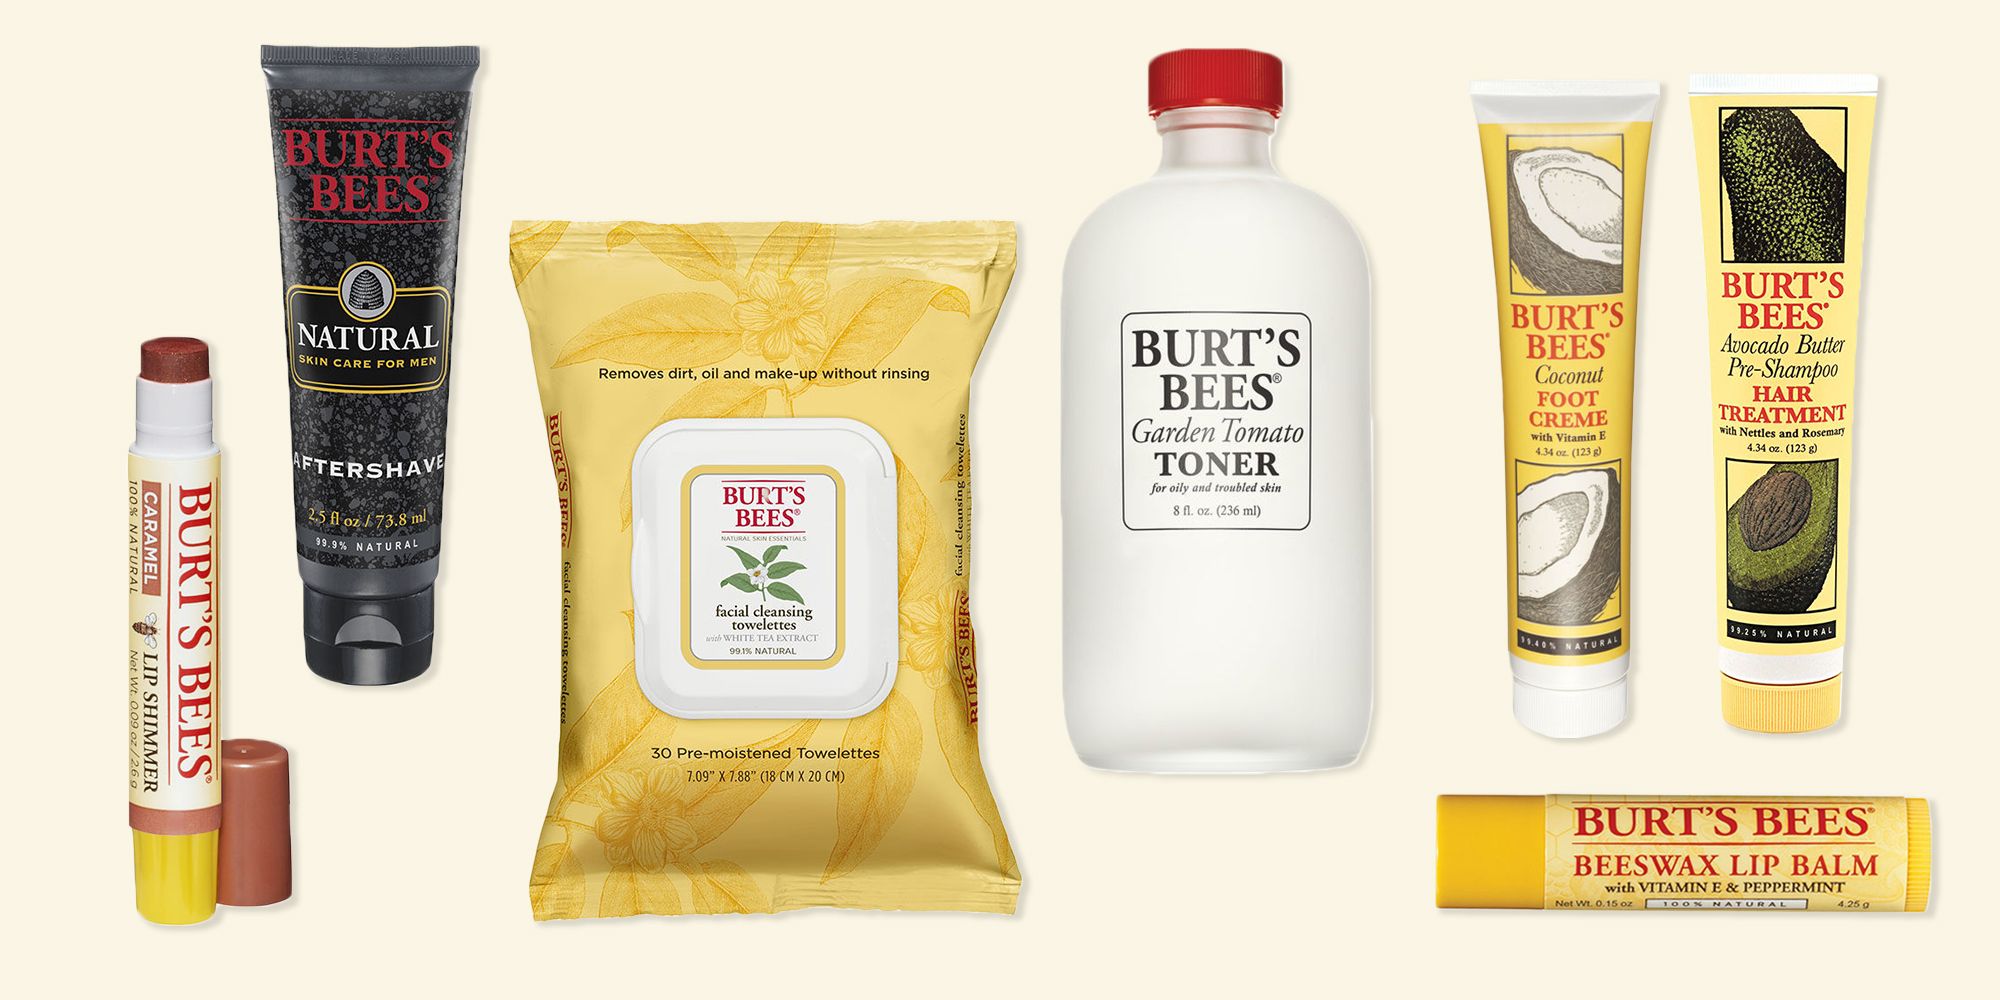 Kameraad Schaap Commotie 11 Best Burt's Bees Products in 2018 - Burt's Bees Lip Balm and Skin Care